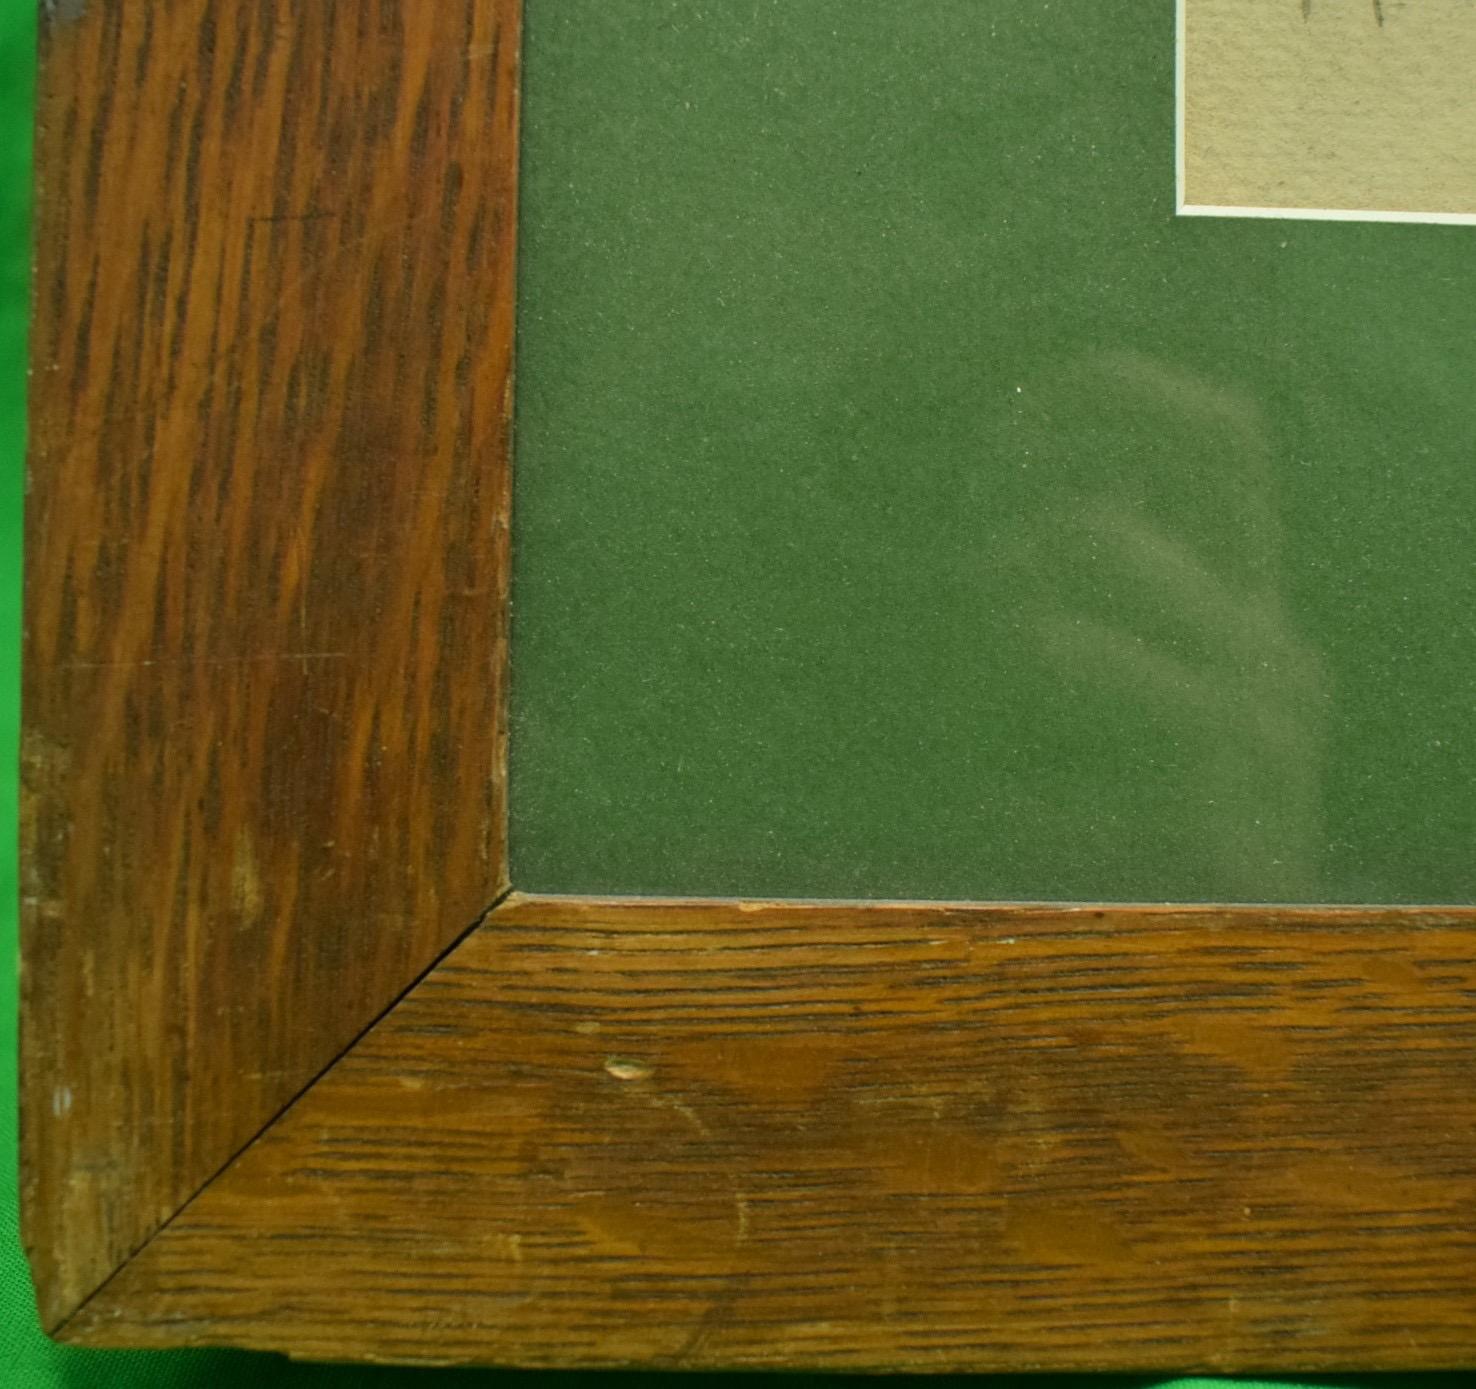 Klassisches Pferderennen Aquarell & Gouache von S.J. Anderton 1921 mit dem Bild von Mr. C.L. Appleton (Jockey) in den lachs-schwarzen Farben von Mrs. Payne Whitneys Greentree Stables auf 'Web Carter'

Kunst Sz: 14 